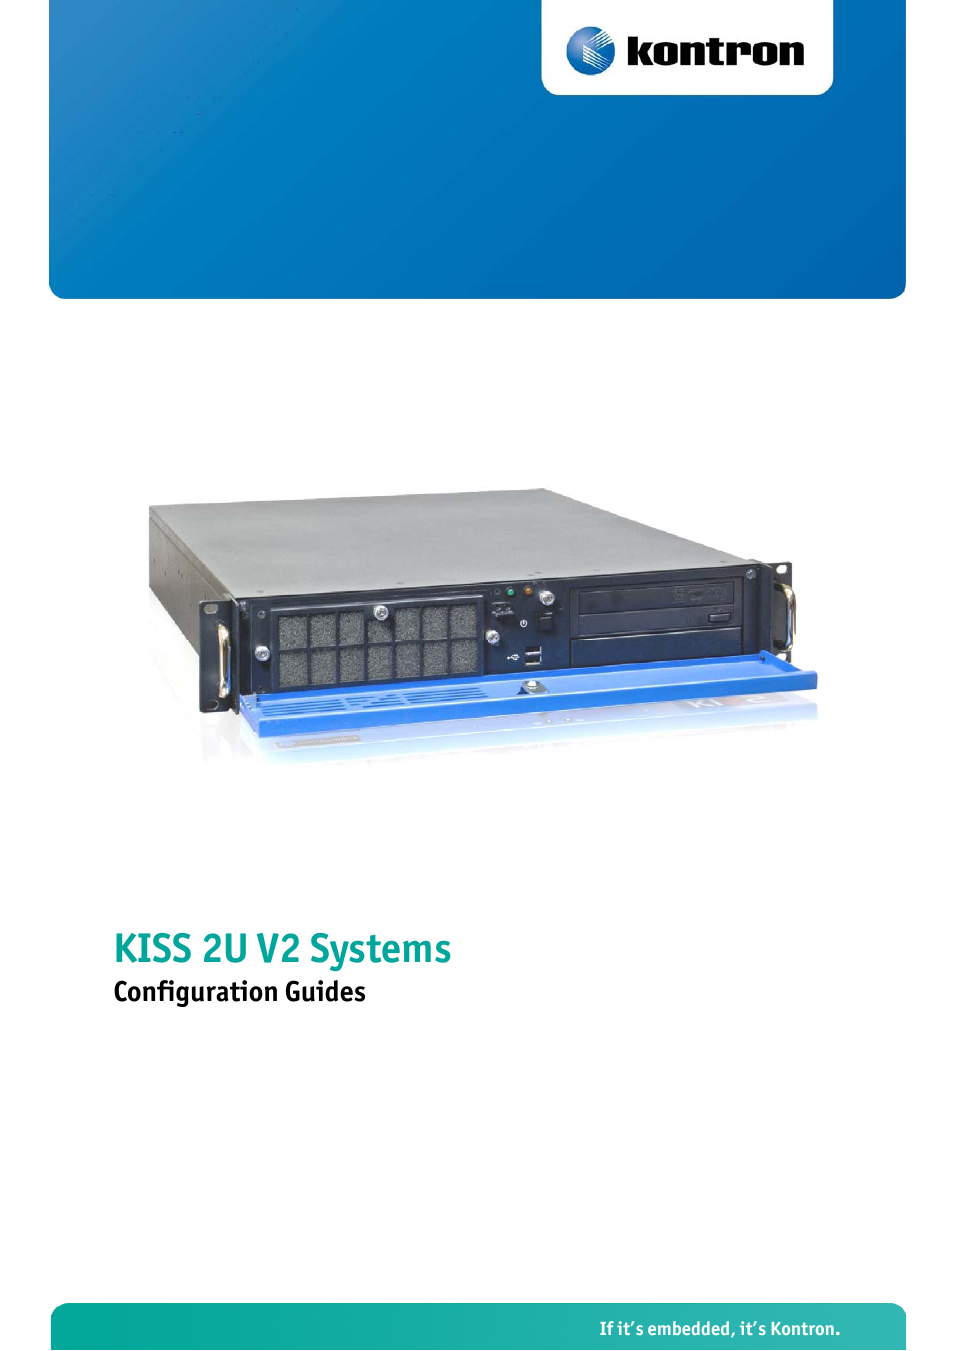 KISS 2U PCI 761